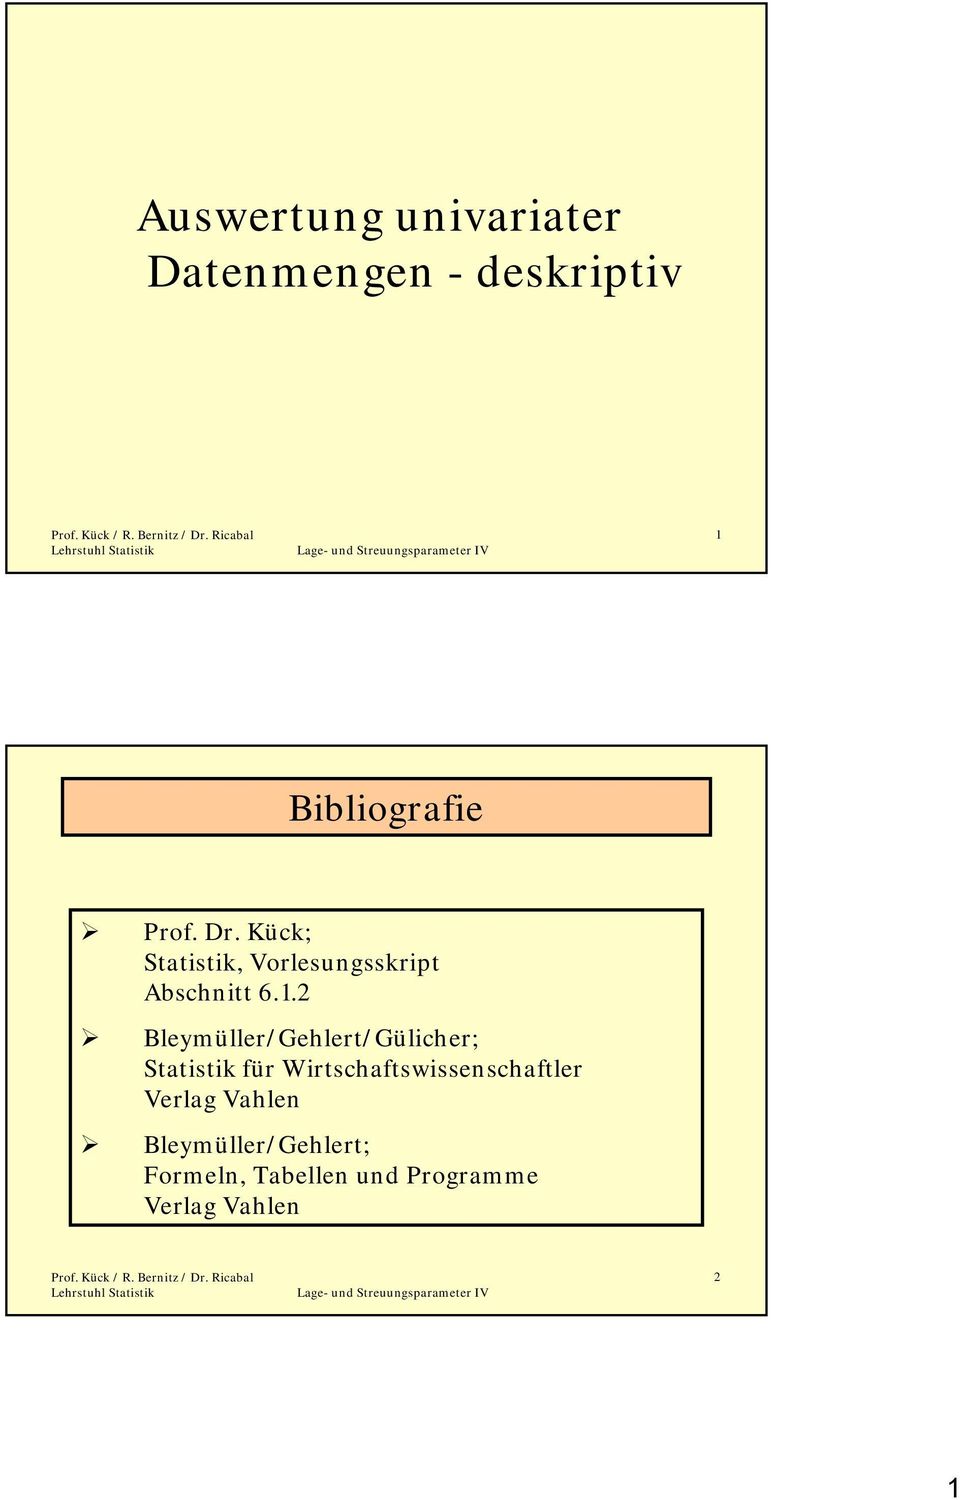 . Bleymüller/Gehlert/Gülcher; Statst für